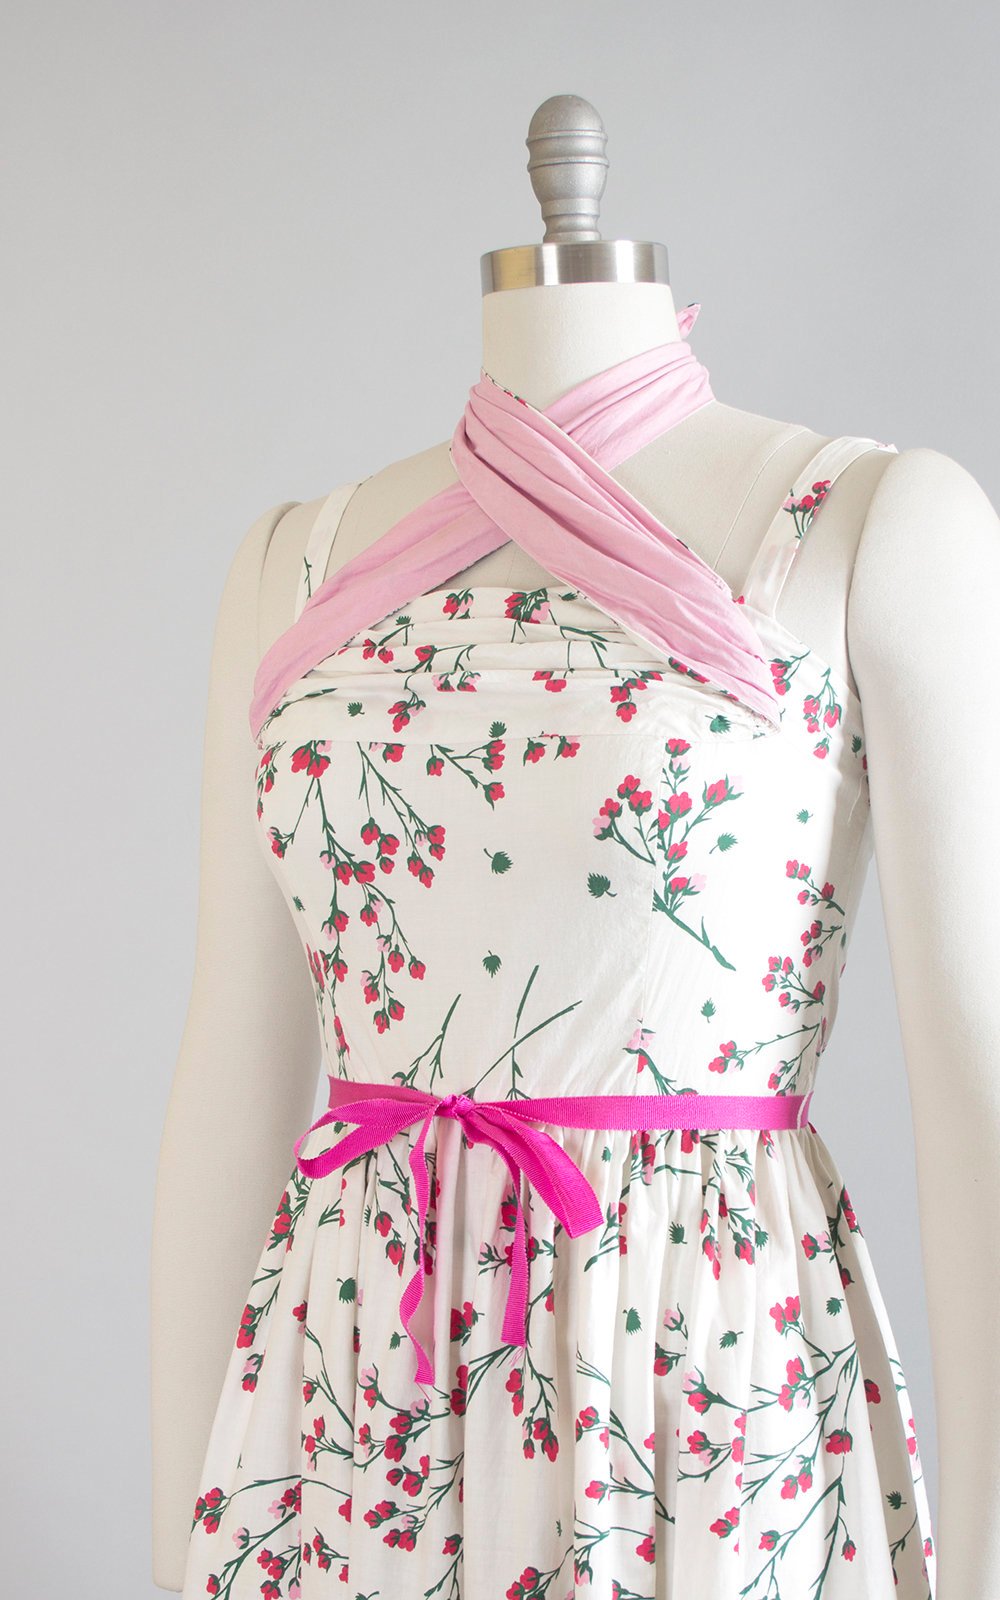 Vintage 1950s Dress | 50s Cherry Blossom Floral Print Cotton Sundress Criss Cross Halter White Pink Full Skirt Day Dress (small)